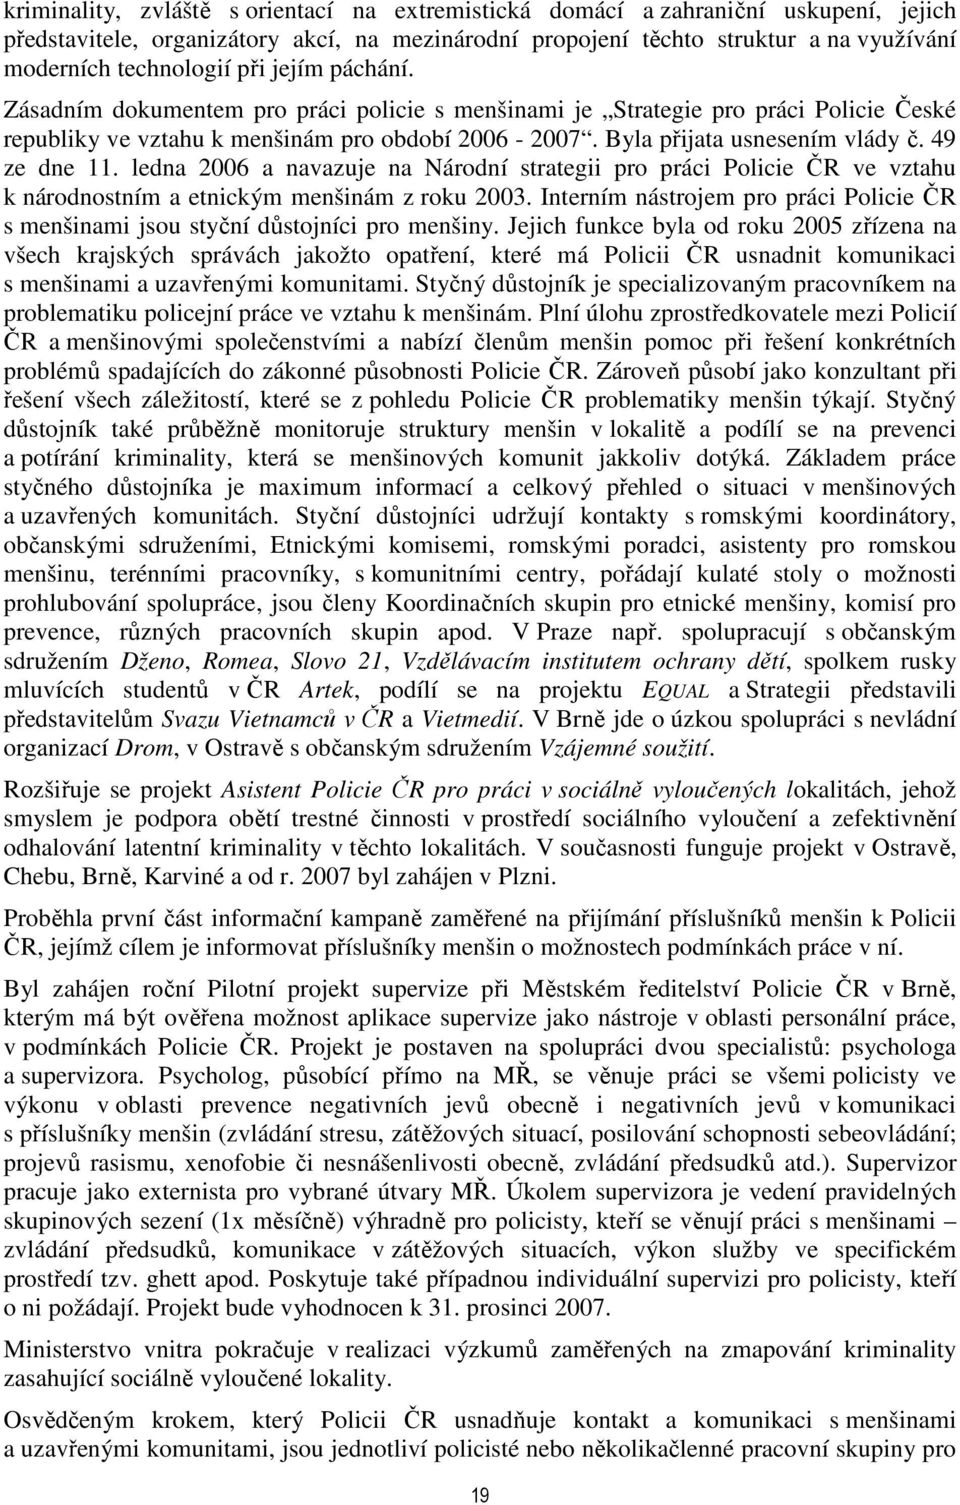 49 ze dne 11. ledna 2006 a navazuje na Národní strategii pro práci Policie ČR ve vztahu k národnostním a etnickým menšinám z roku 2003.